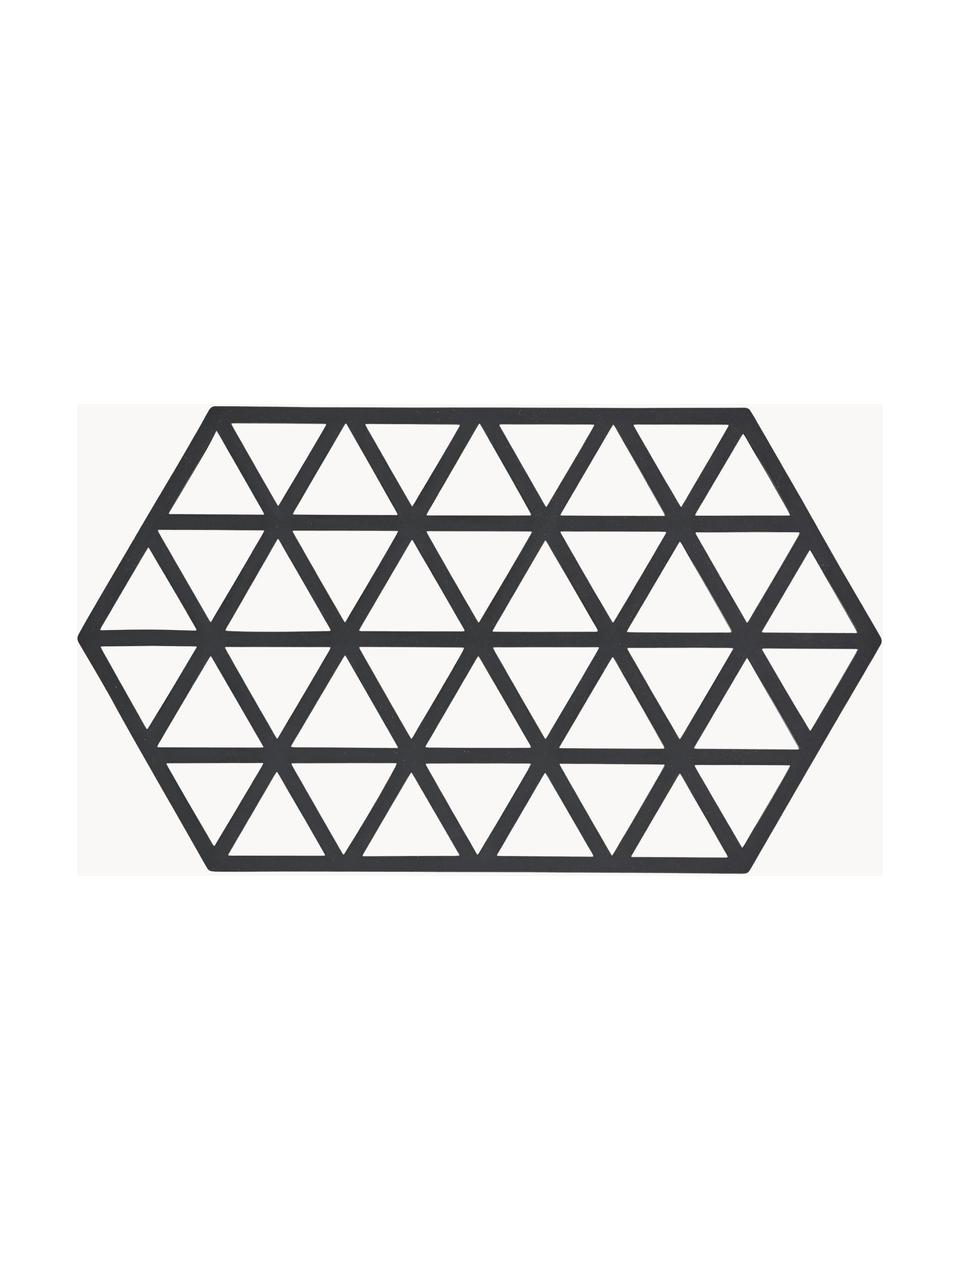 Podstawka pod gorące naczynia z silikonu Triangle, Silikon, Czarny, D 24 x S 14 cm